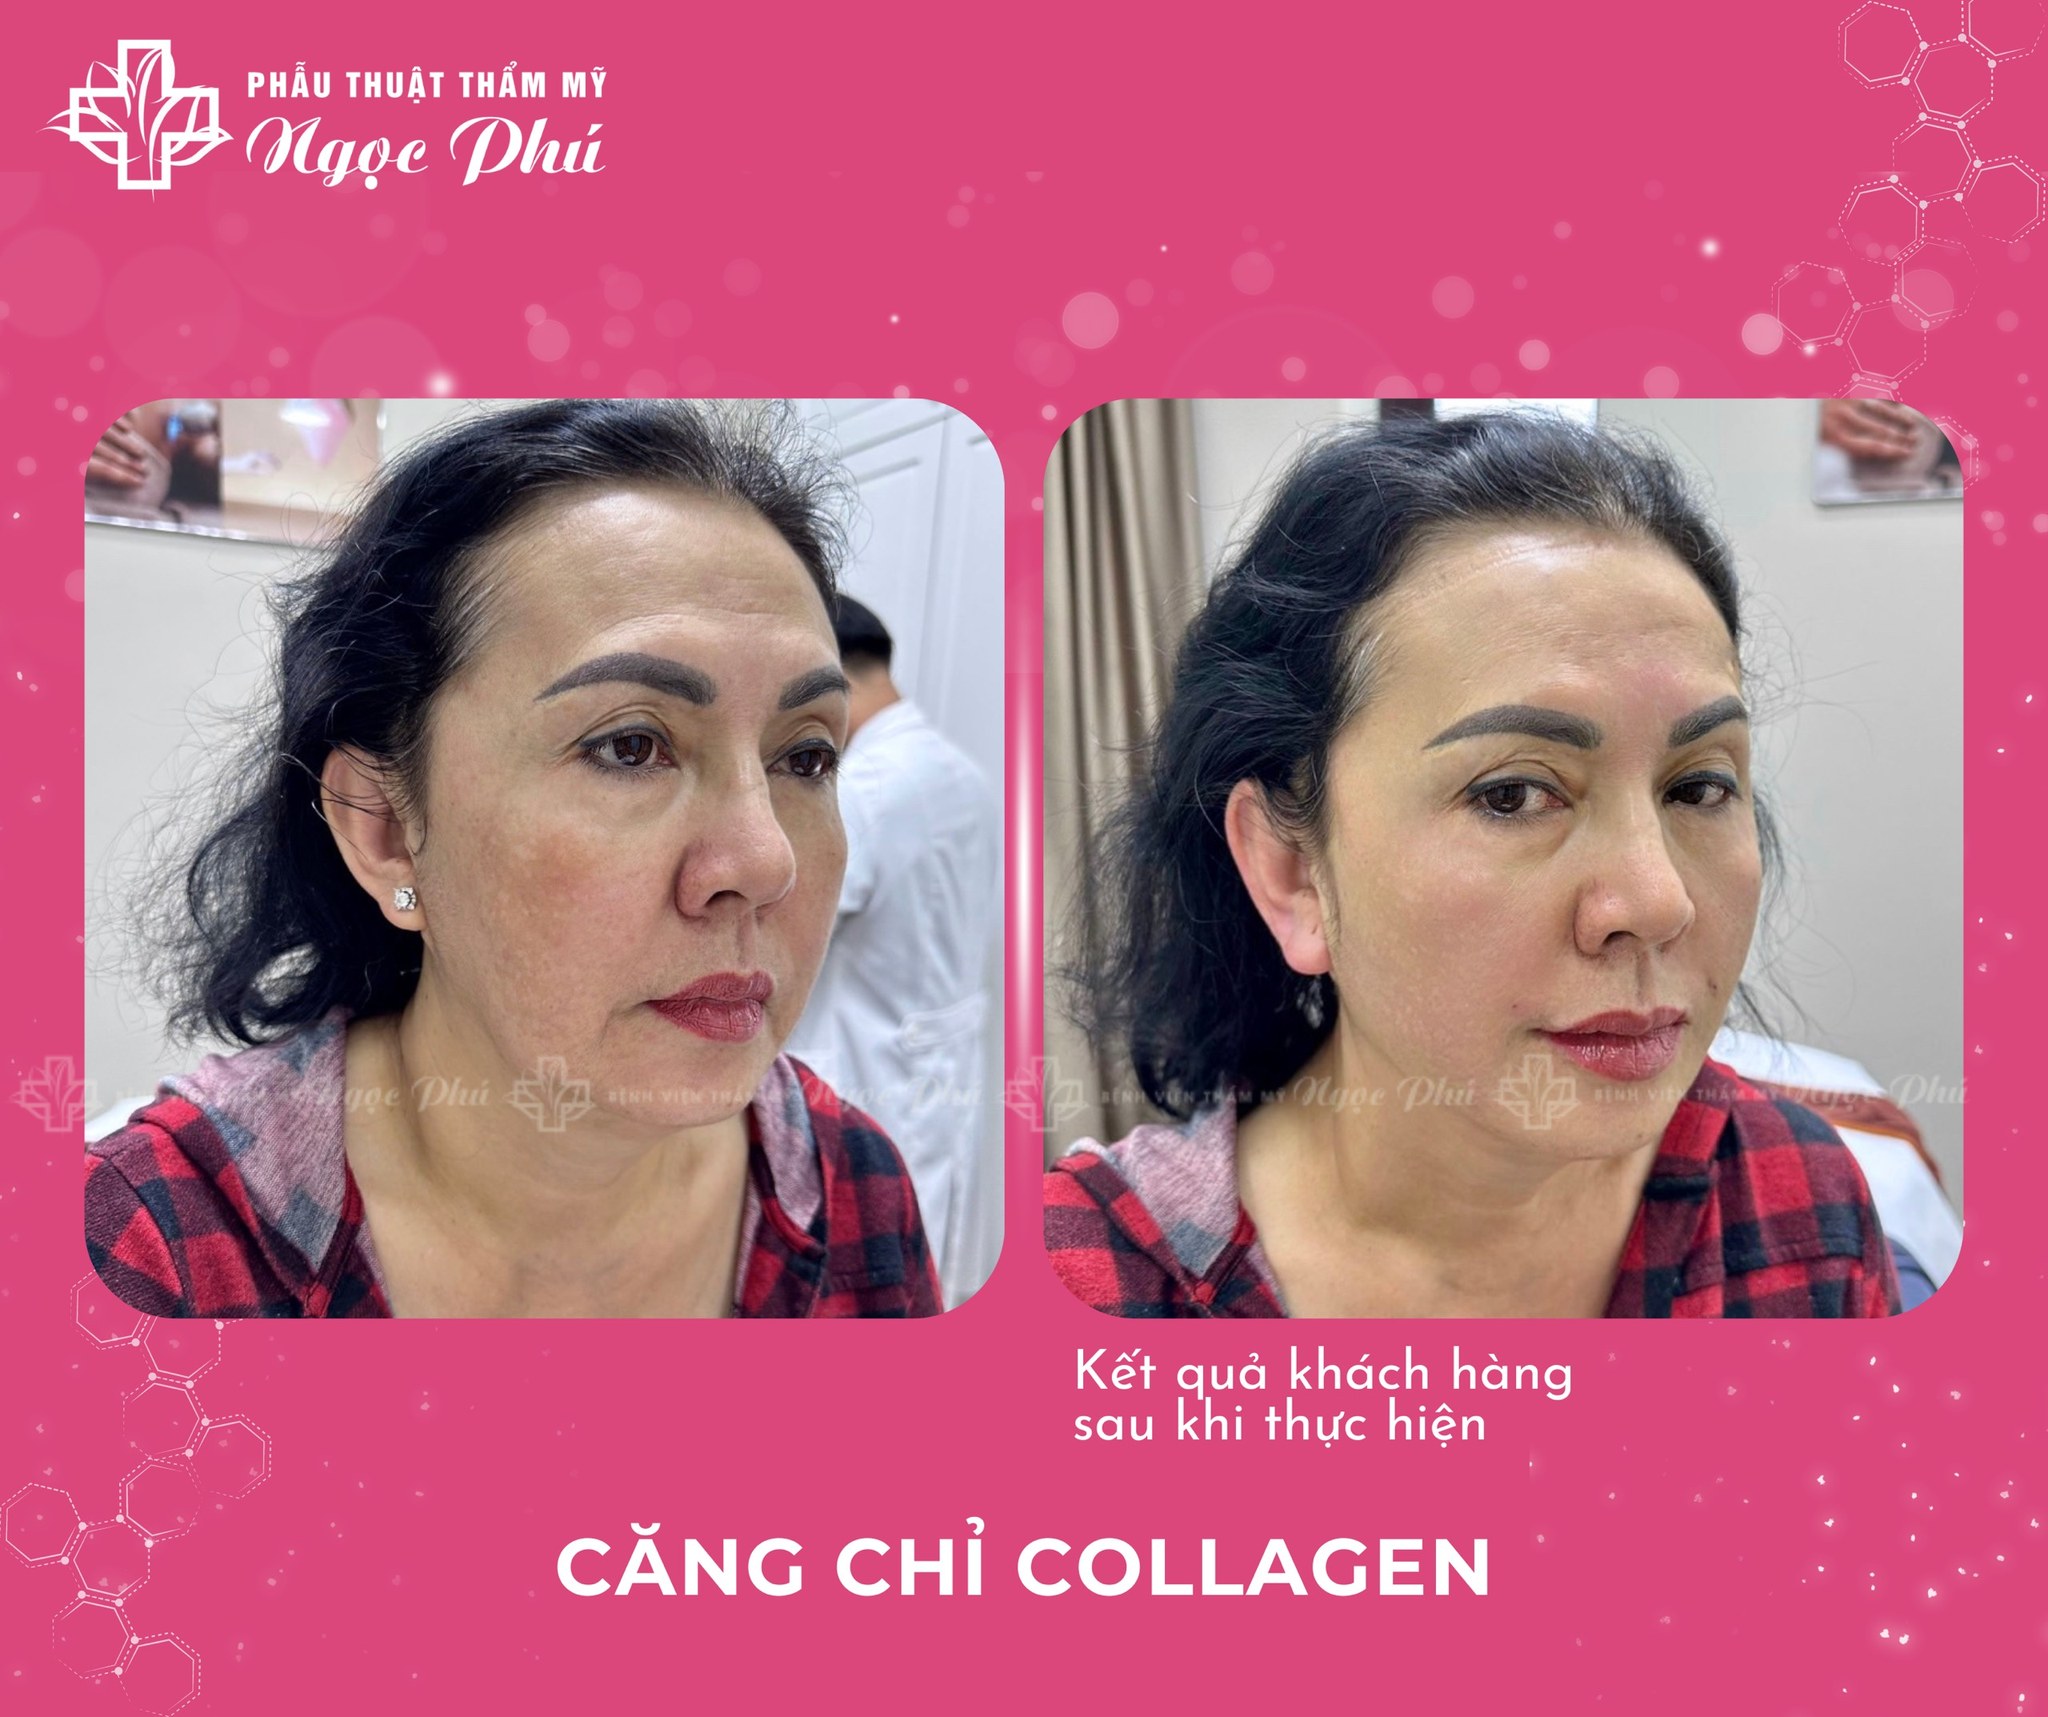 Căng chỉ collagen là một trong những phương pháp làm đẹp tiên tiến giúp trẻ hóa da, được rất nhiều chị em quan tâm và lựa chọn.